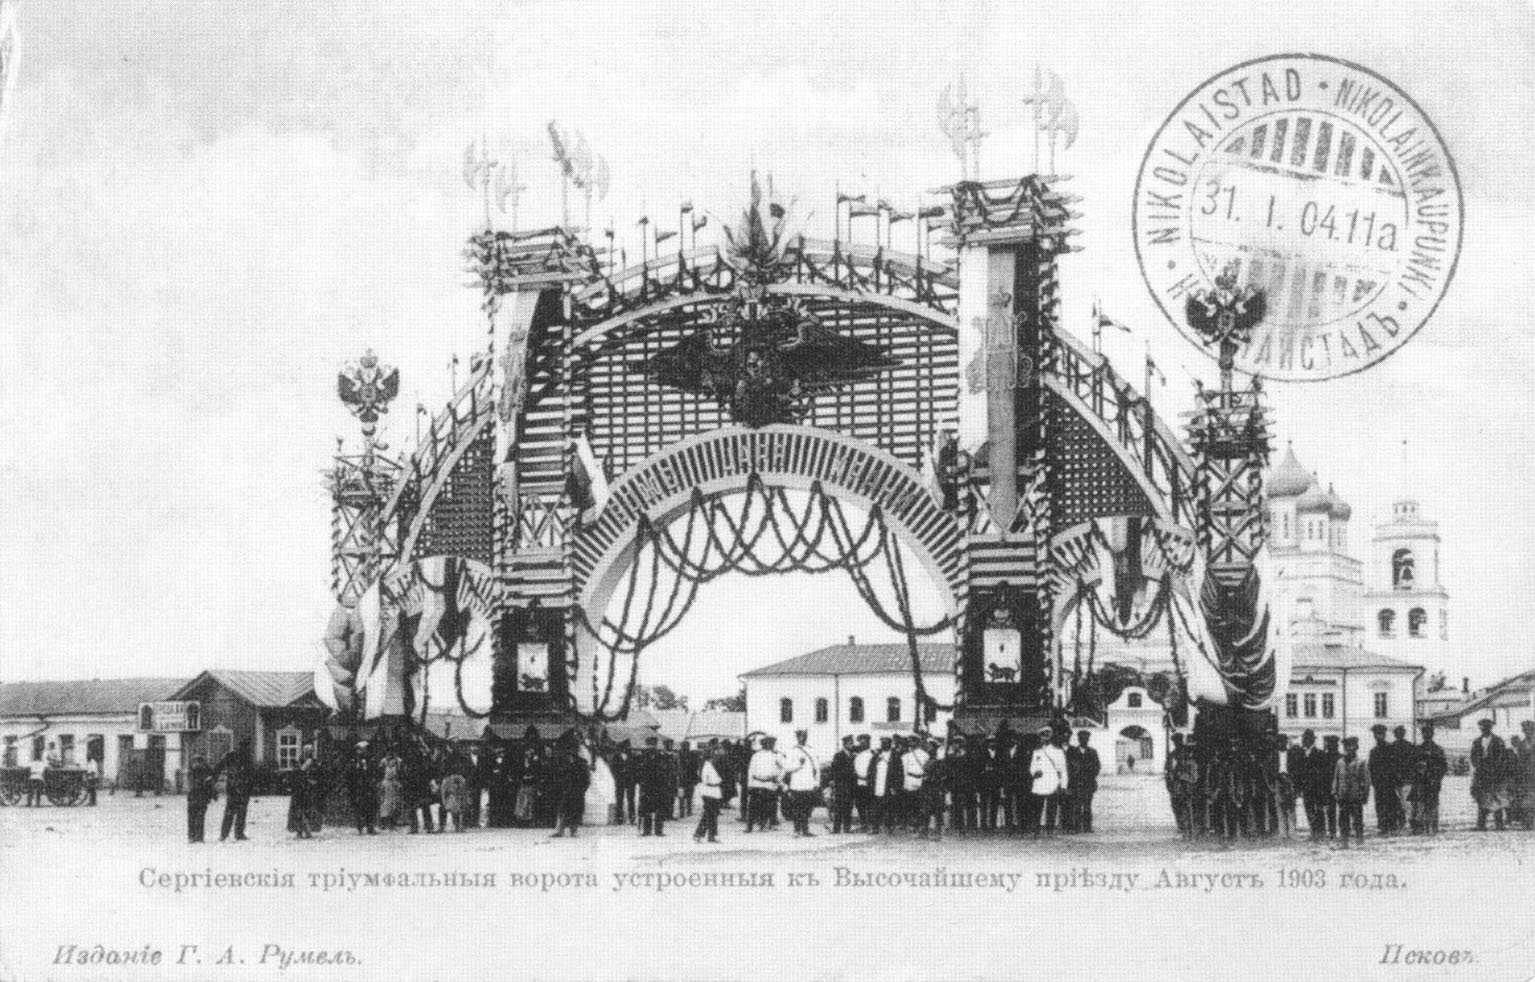 Псков. Сергиевские триумфальные ворота, устроенные к Высочайшему приезду. Август 1903 года.